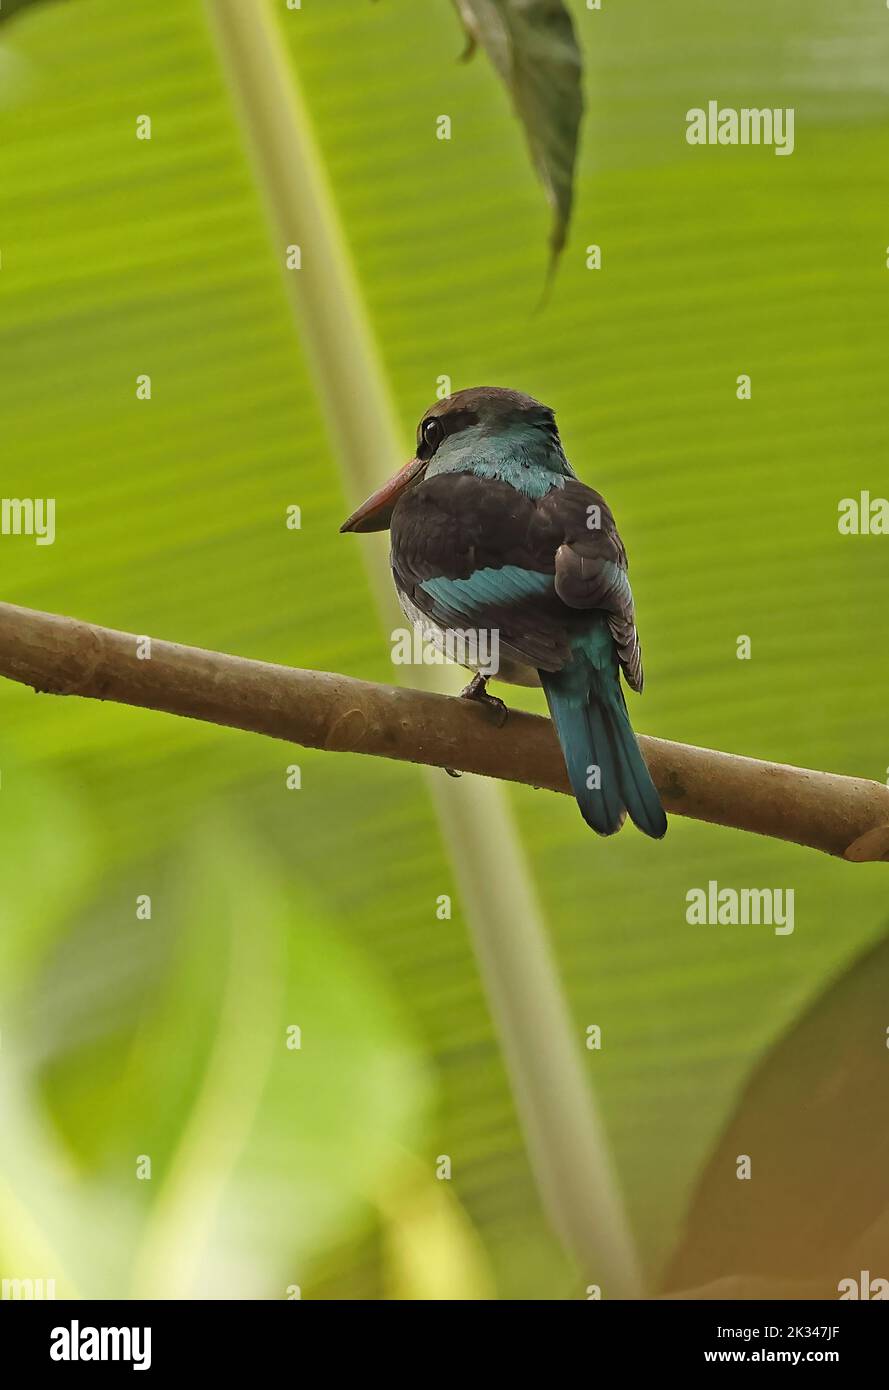 Kingfisher croisé (Halcyon malimbica dryas) adulte perché sur la branche, sous-espèce endémique principe, Sao Tomé-et-principe. Septem Banque D'Images